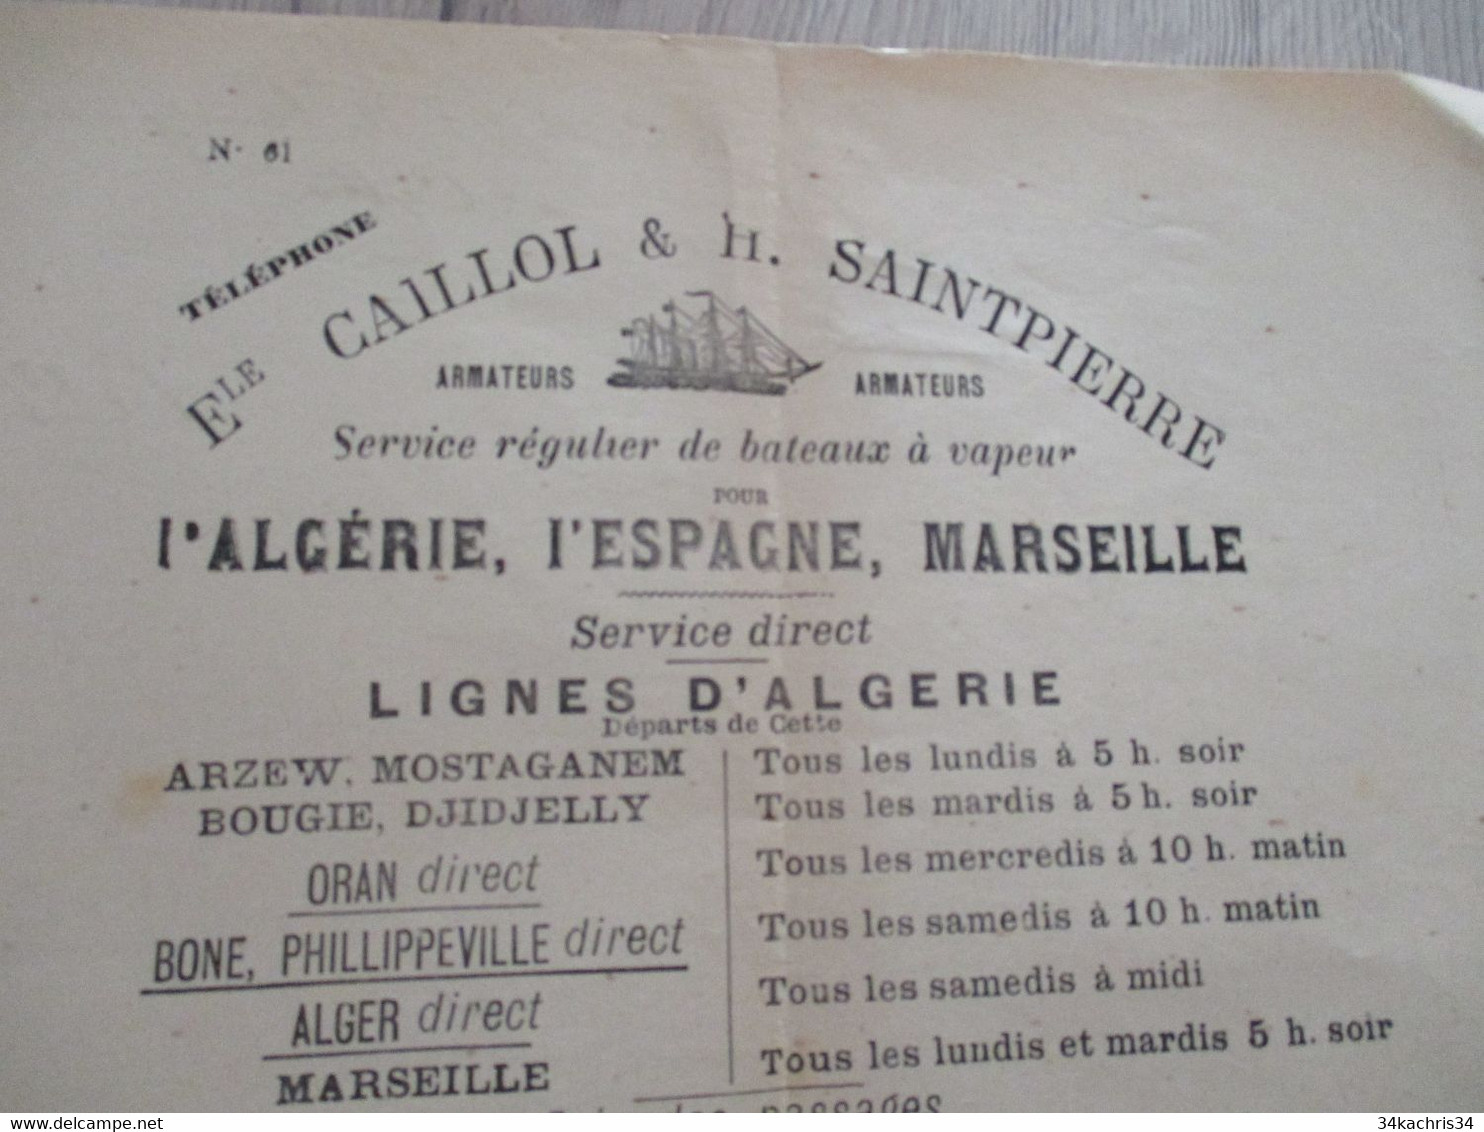 Pub Publicité Armateur Caillol SaintPierre Service Bateaux Vapeur Algérie Espagne Marseille Imprim. Cette Sète - Verkehr & Transport